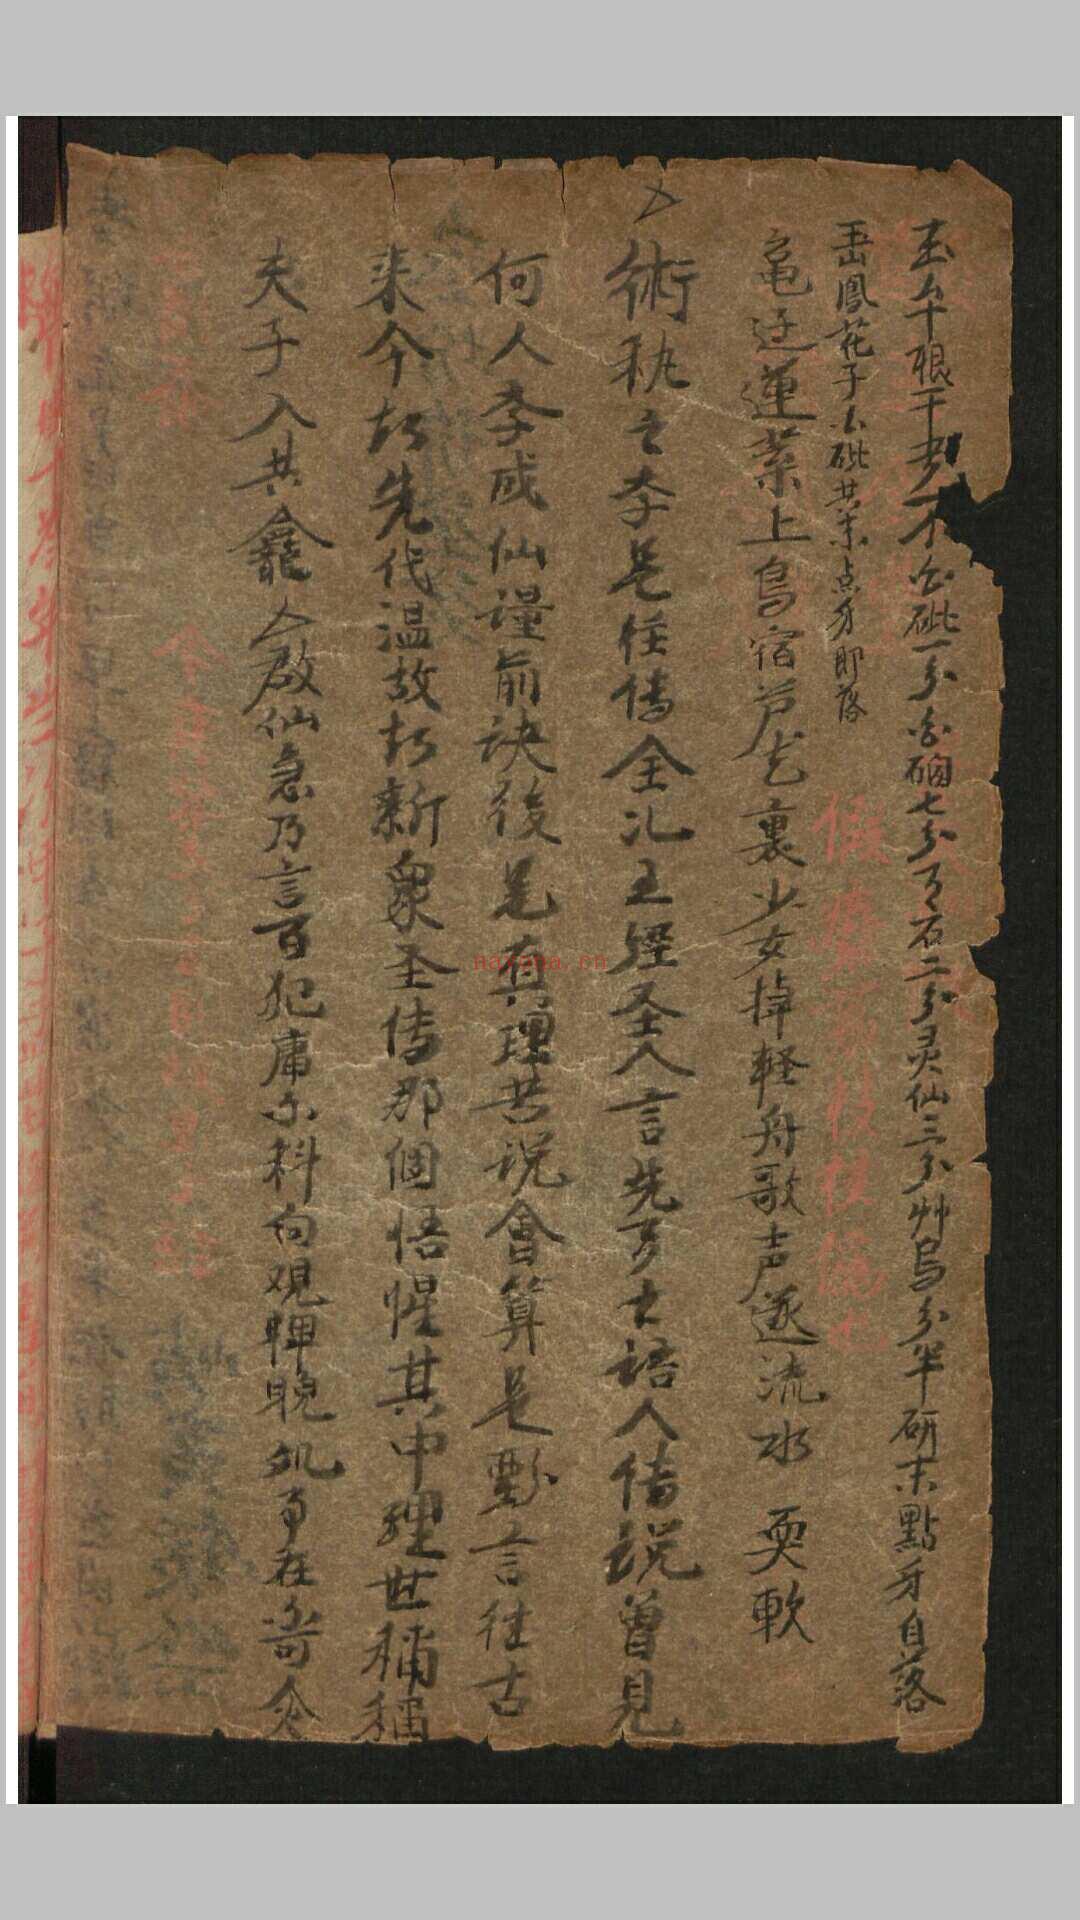 家藏医药抄本, 1882